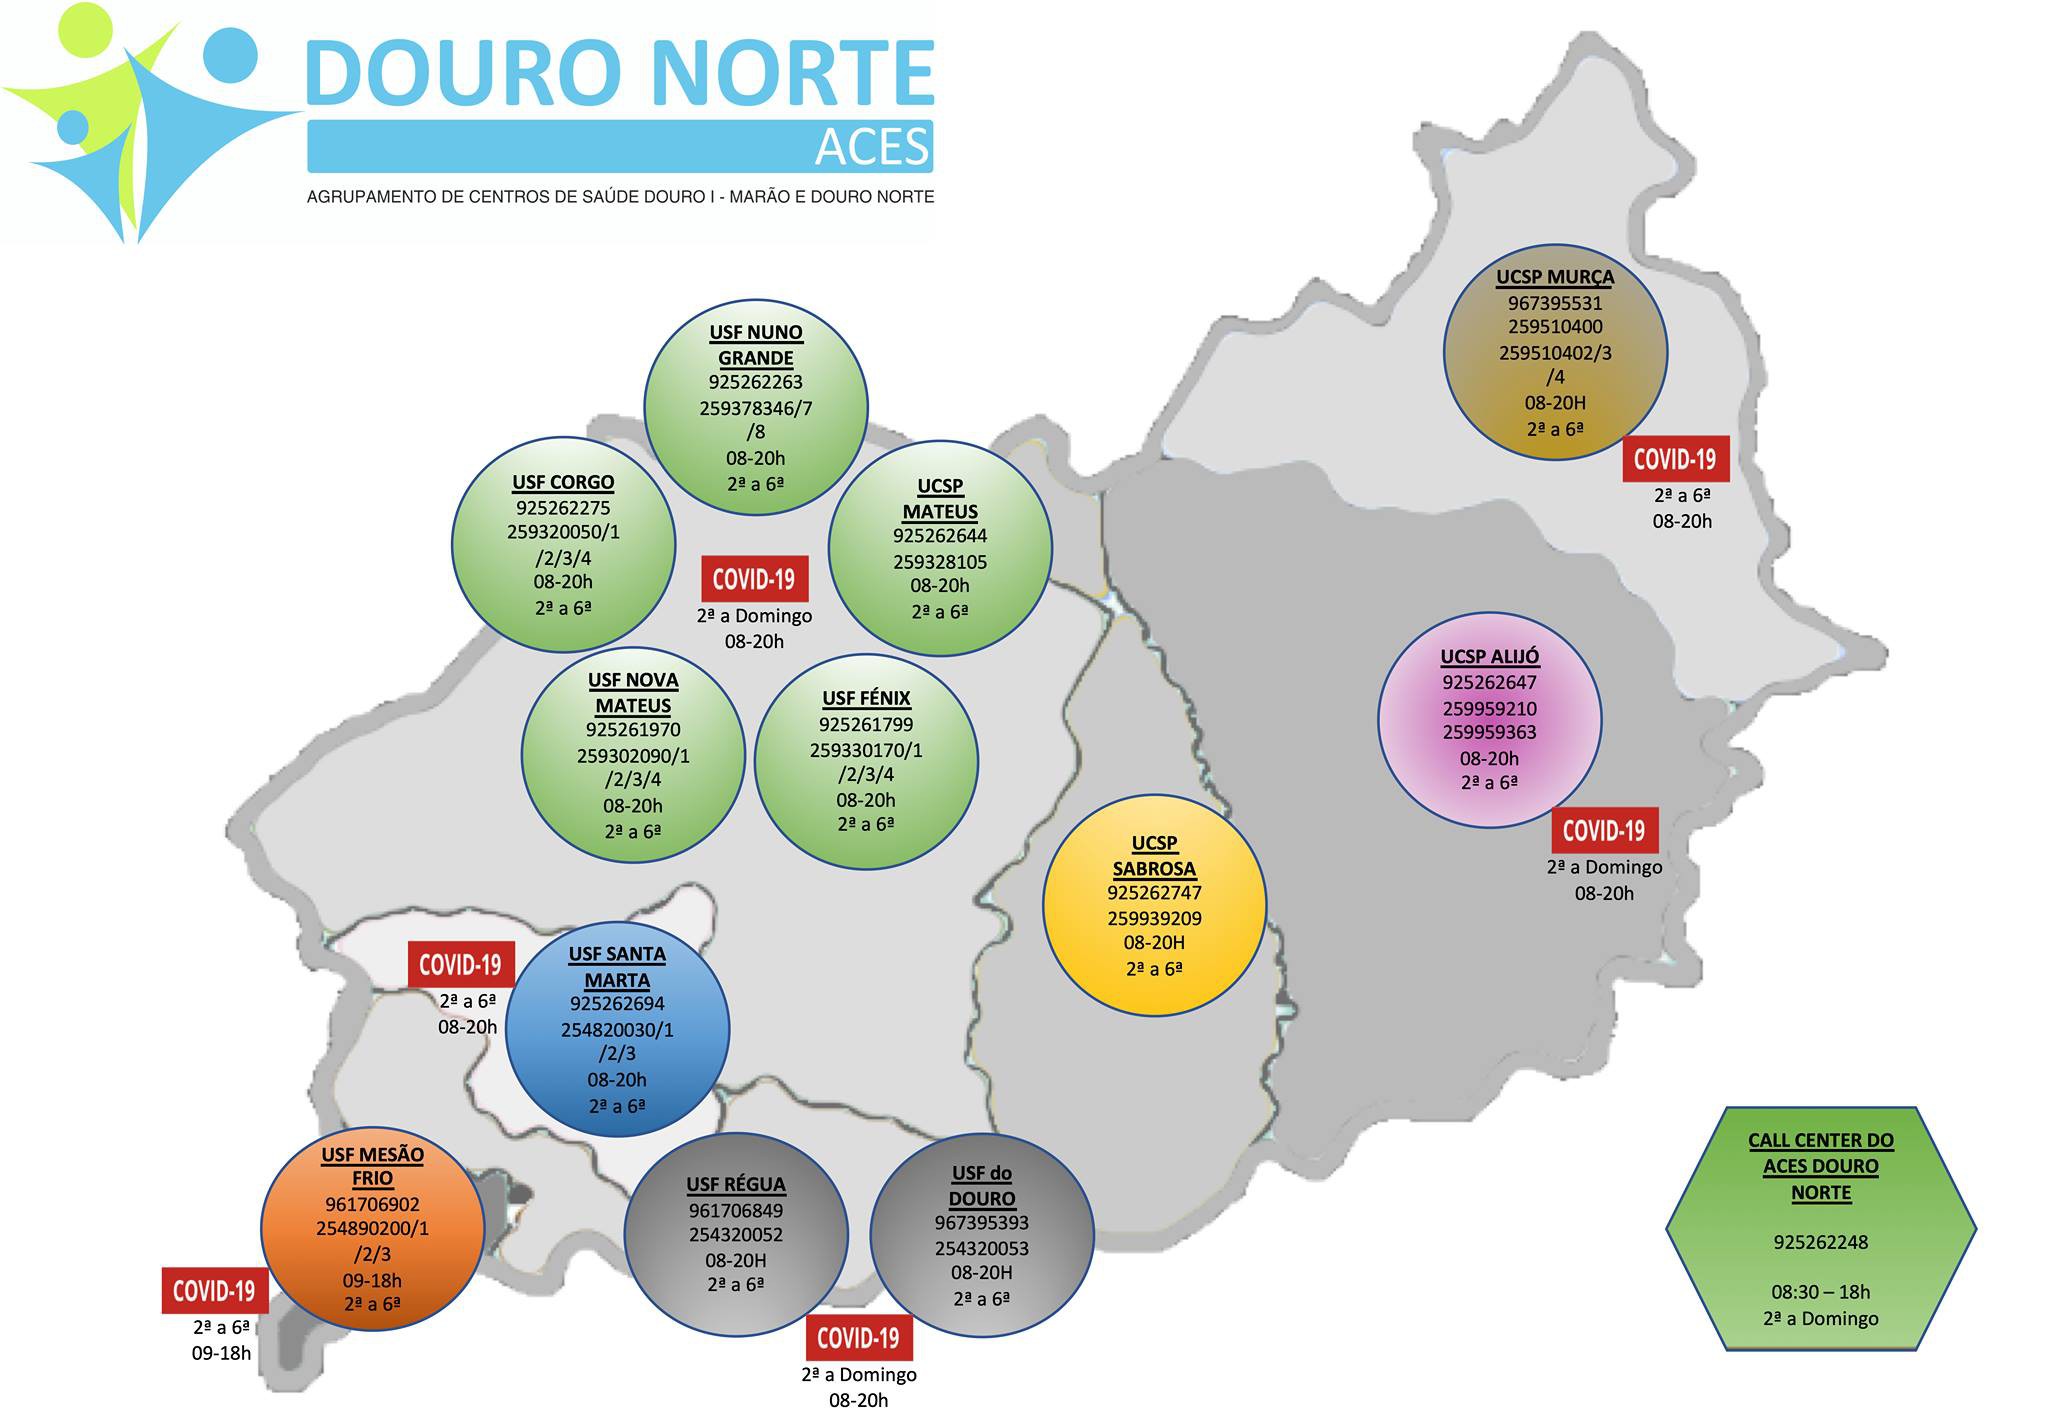 ACES Douro Norte cria 'call center' para reforçar apoio os utentes